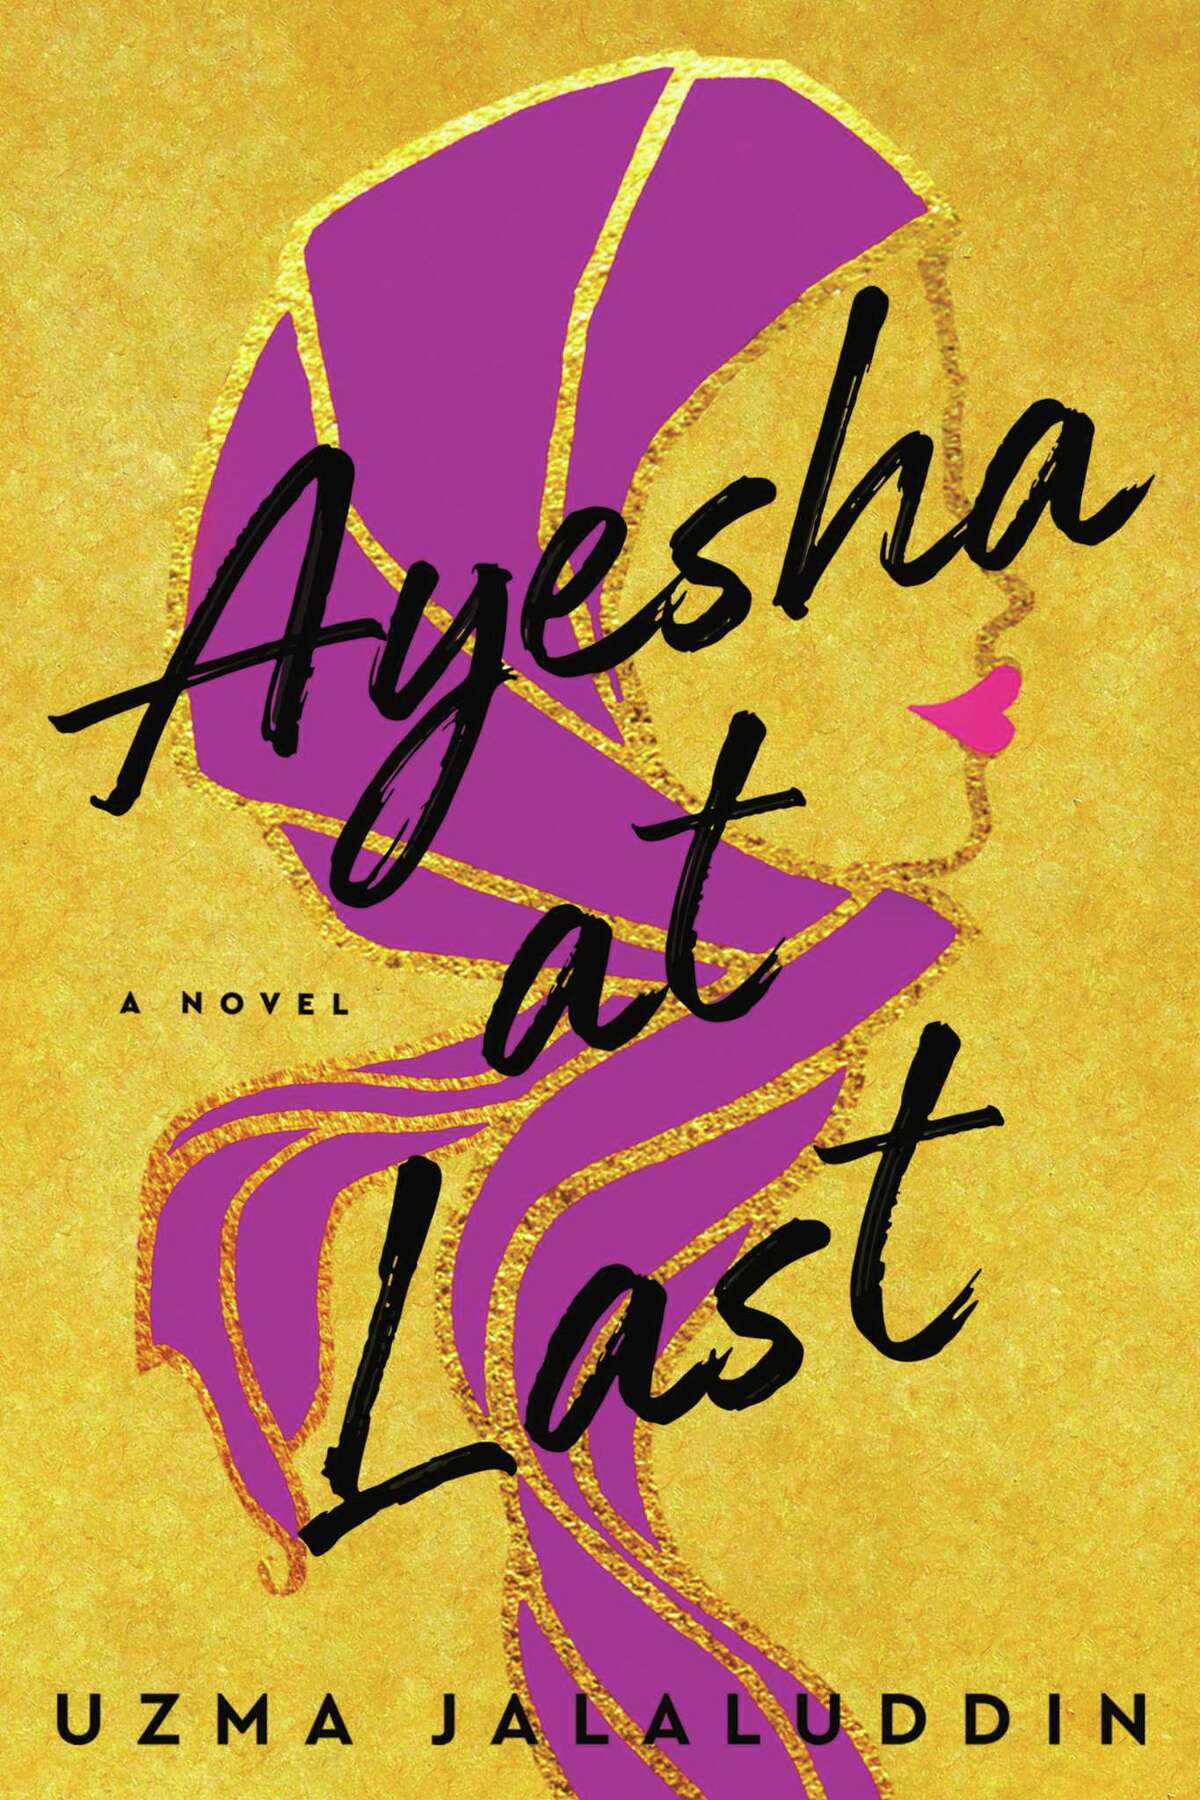 Ayesha At Last, by Uzma Jalaluddin